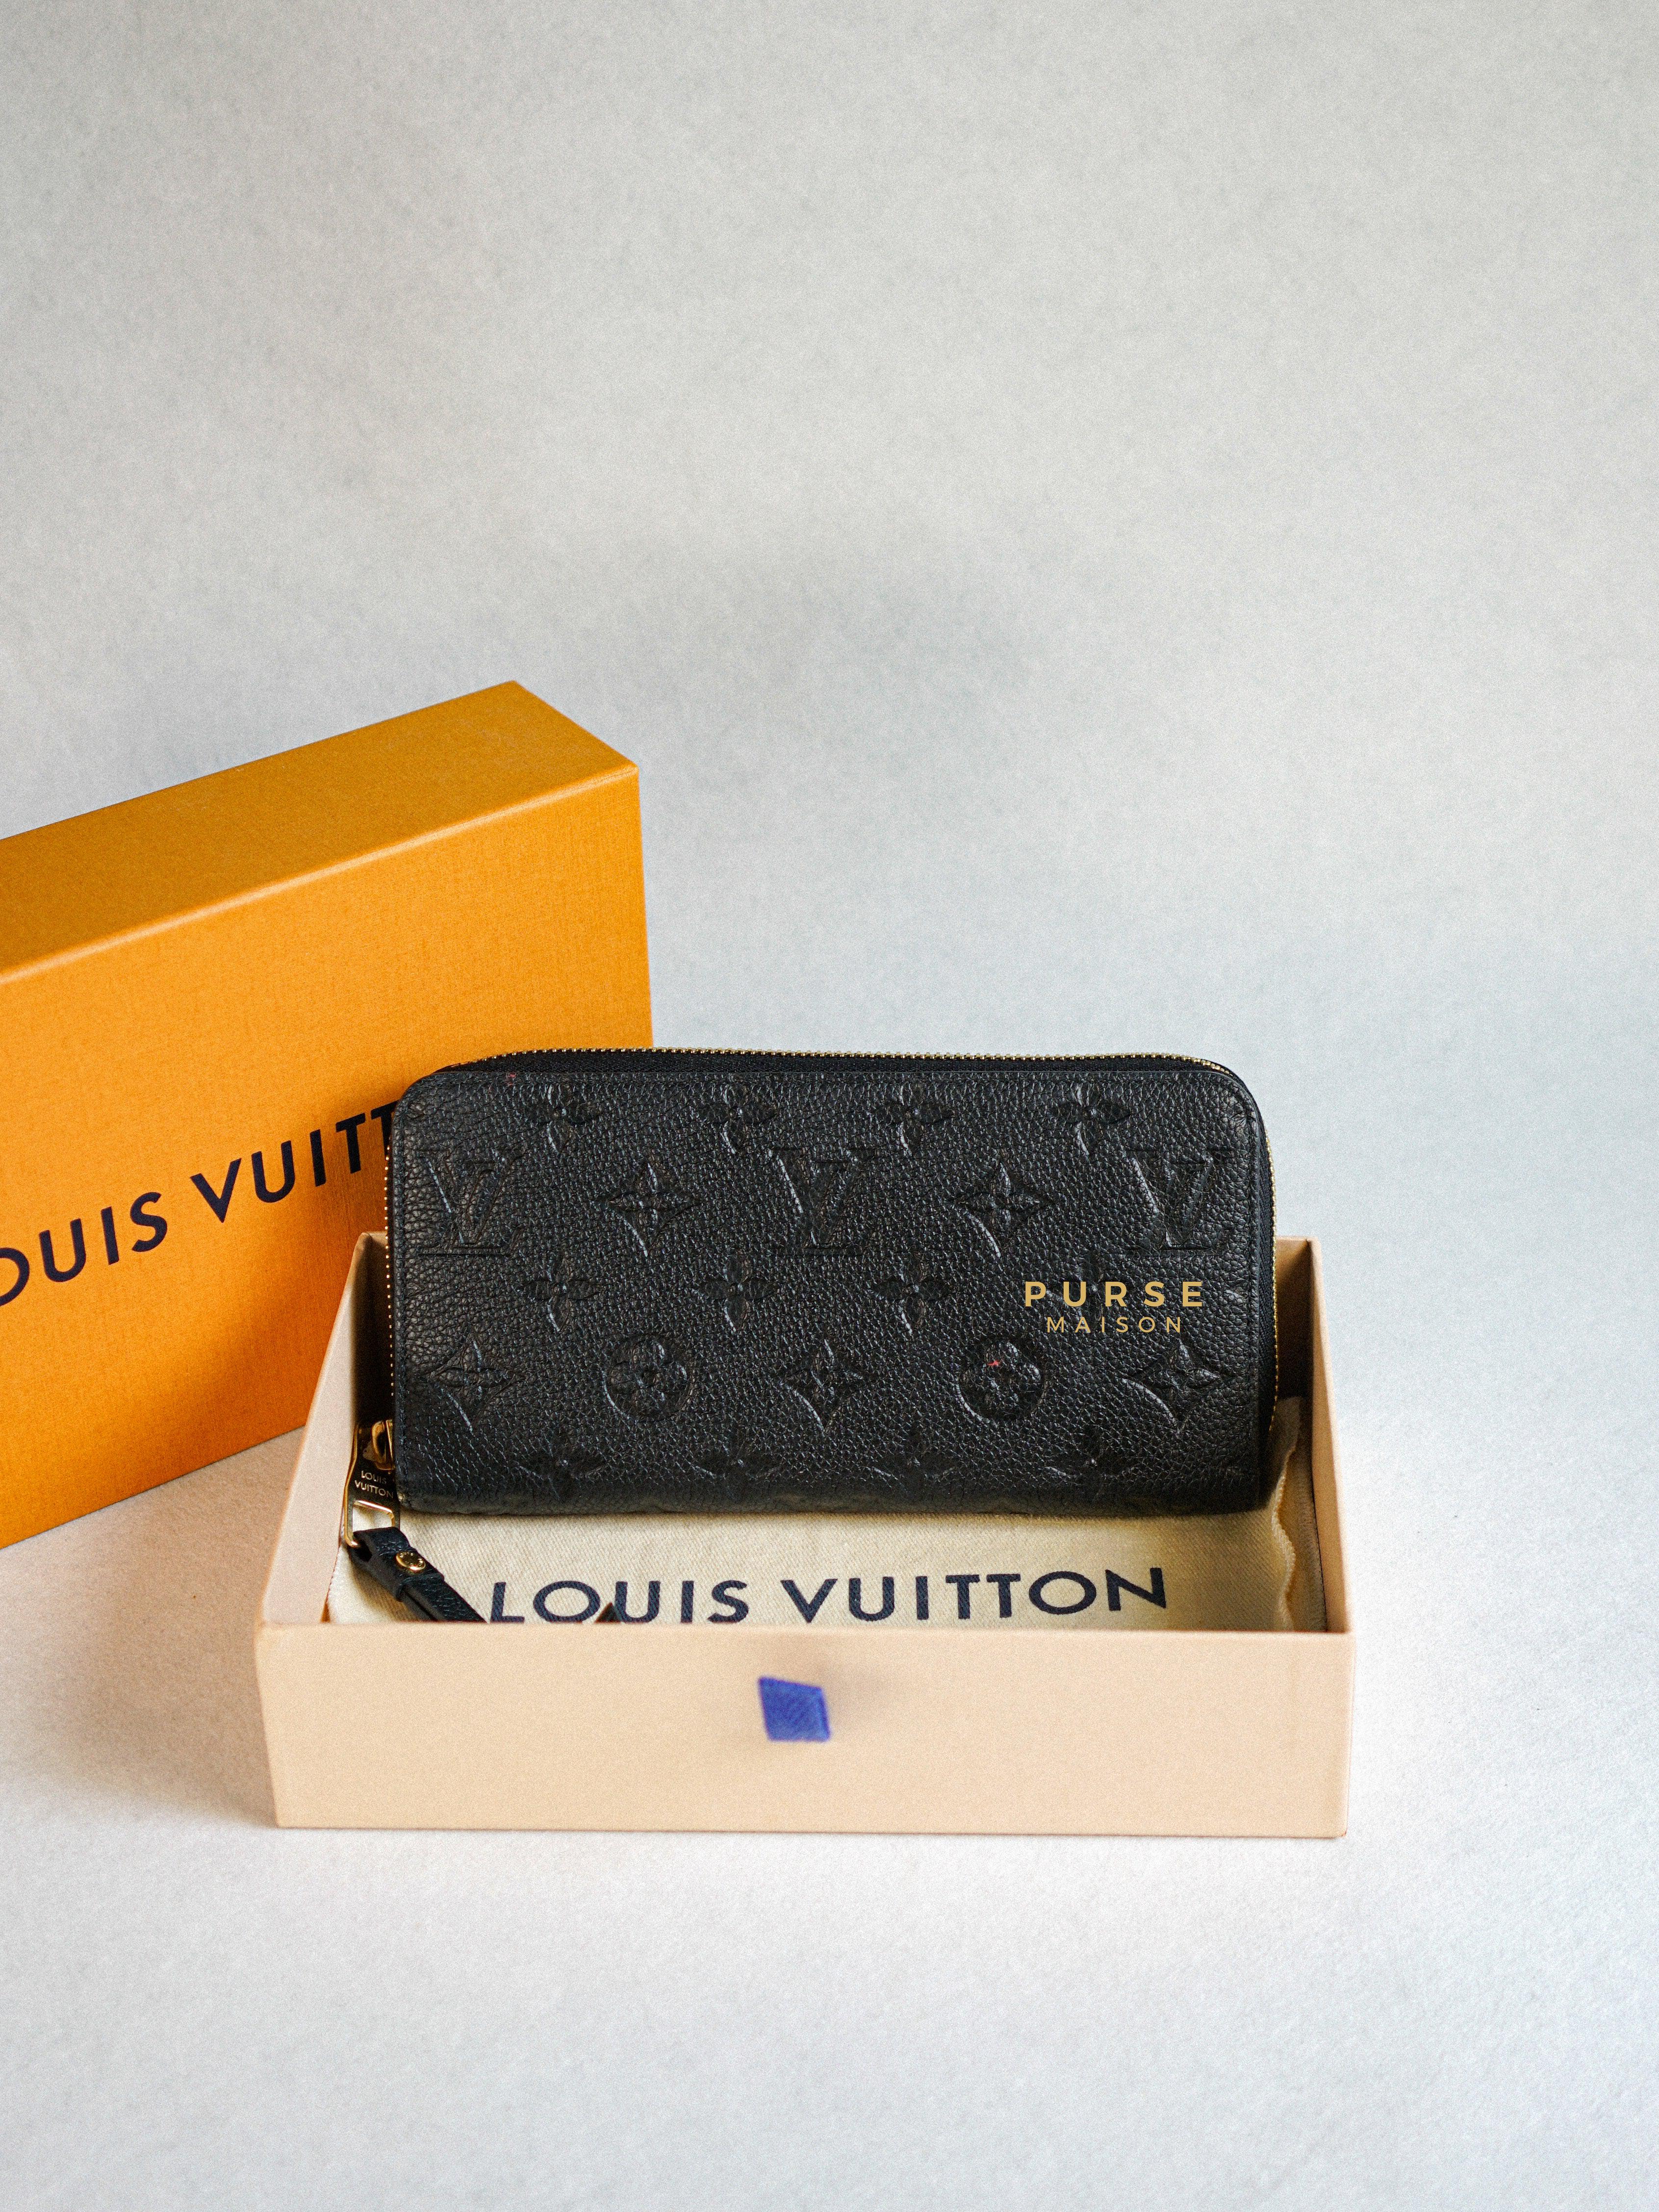 Louis Vuitton Zippy Long Wallet in Noir Monogram Empreinte | Purse Maison Luxury Bags Shop